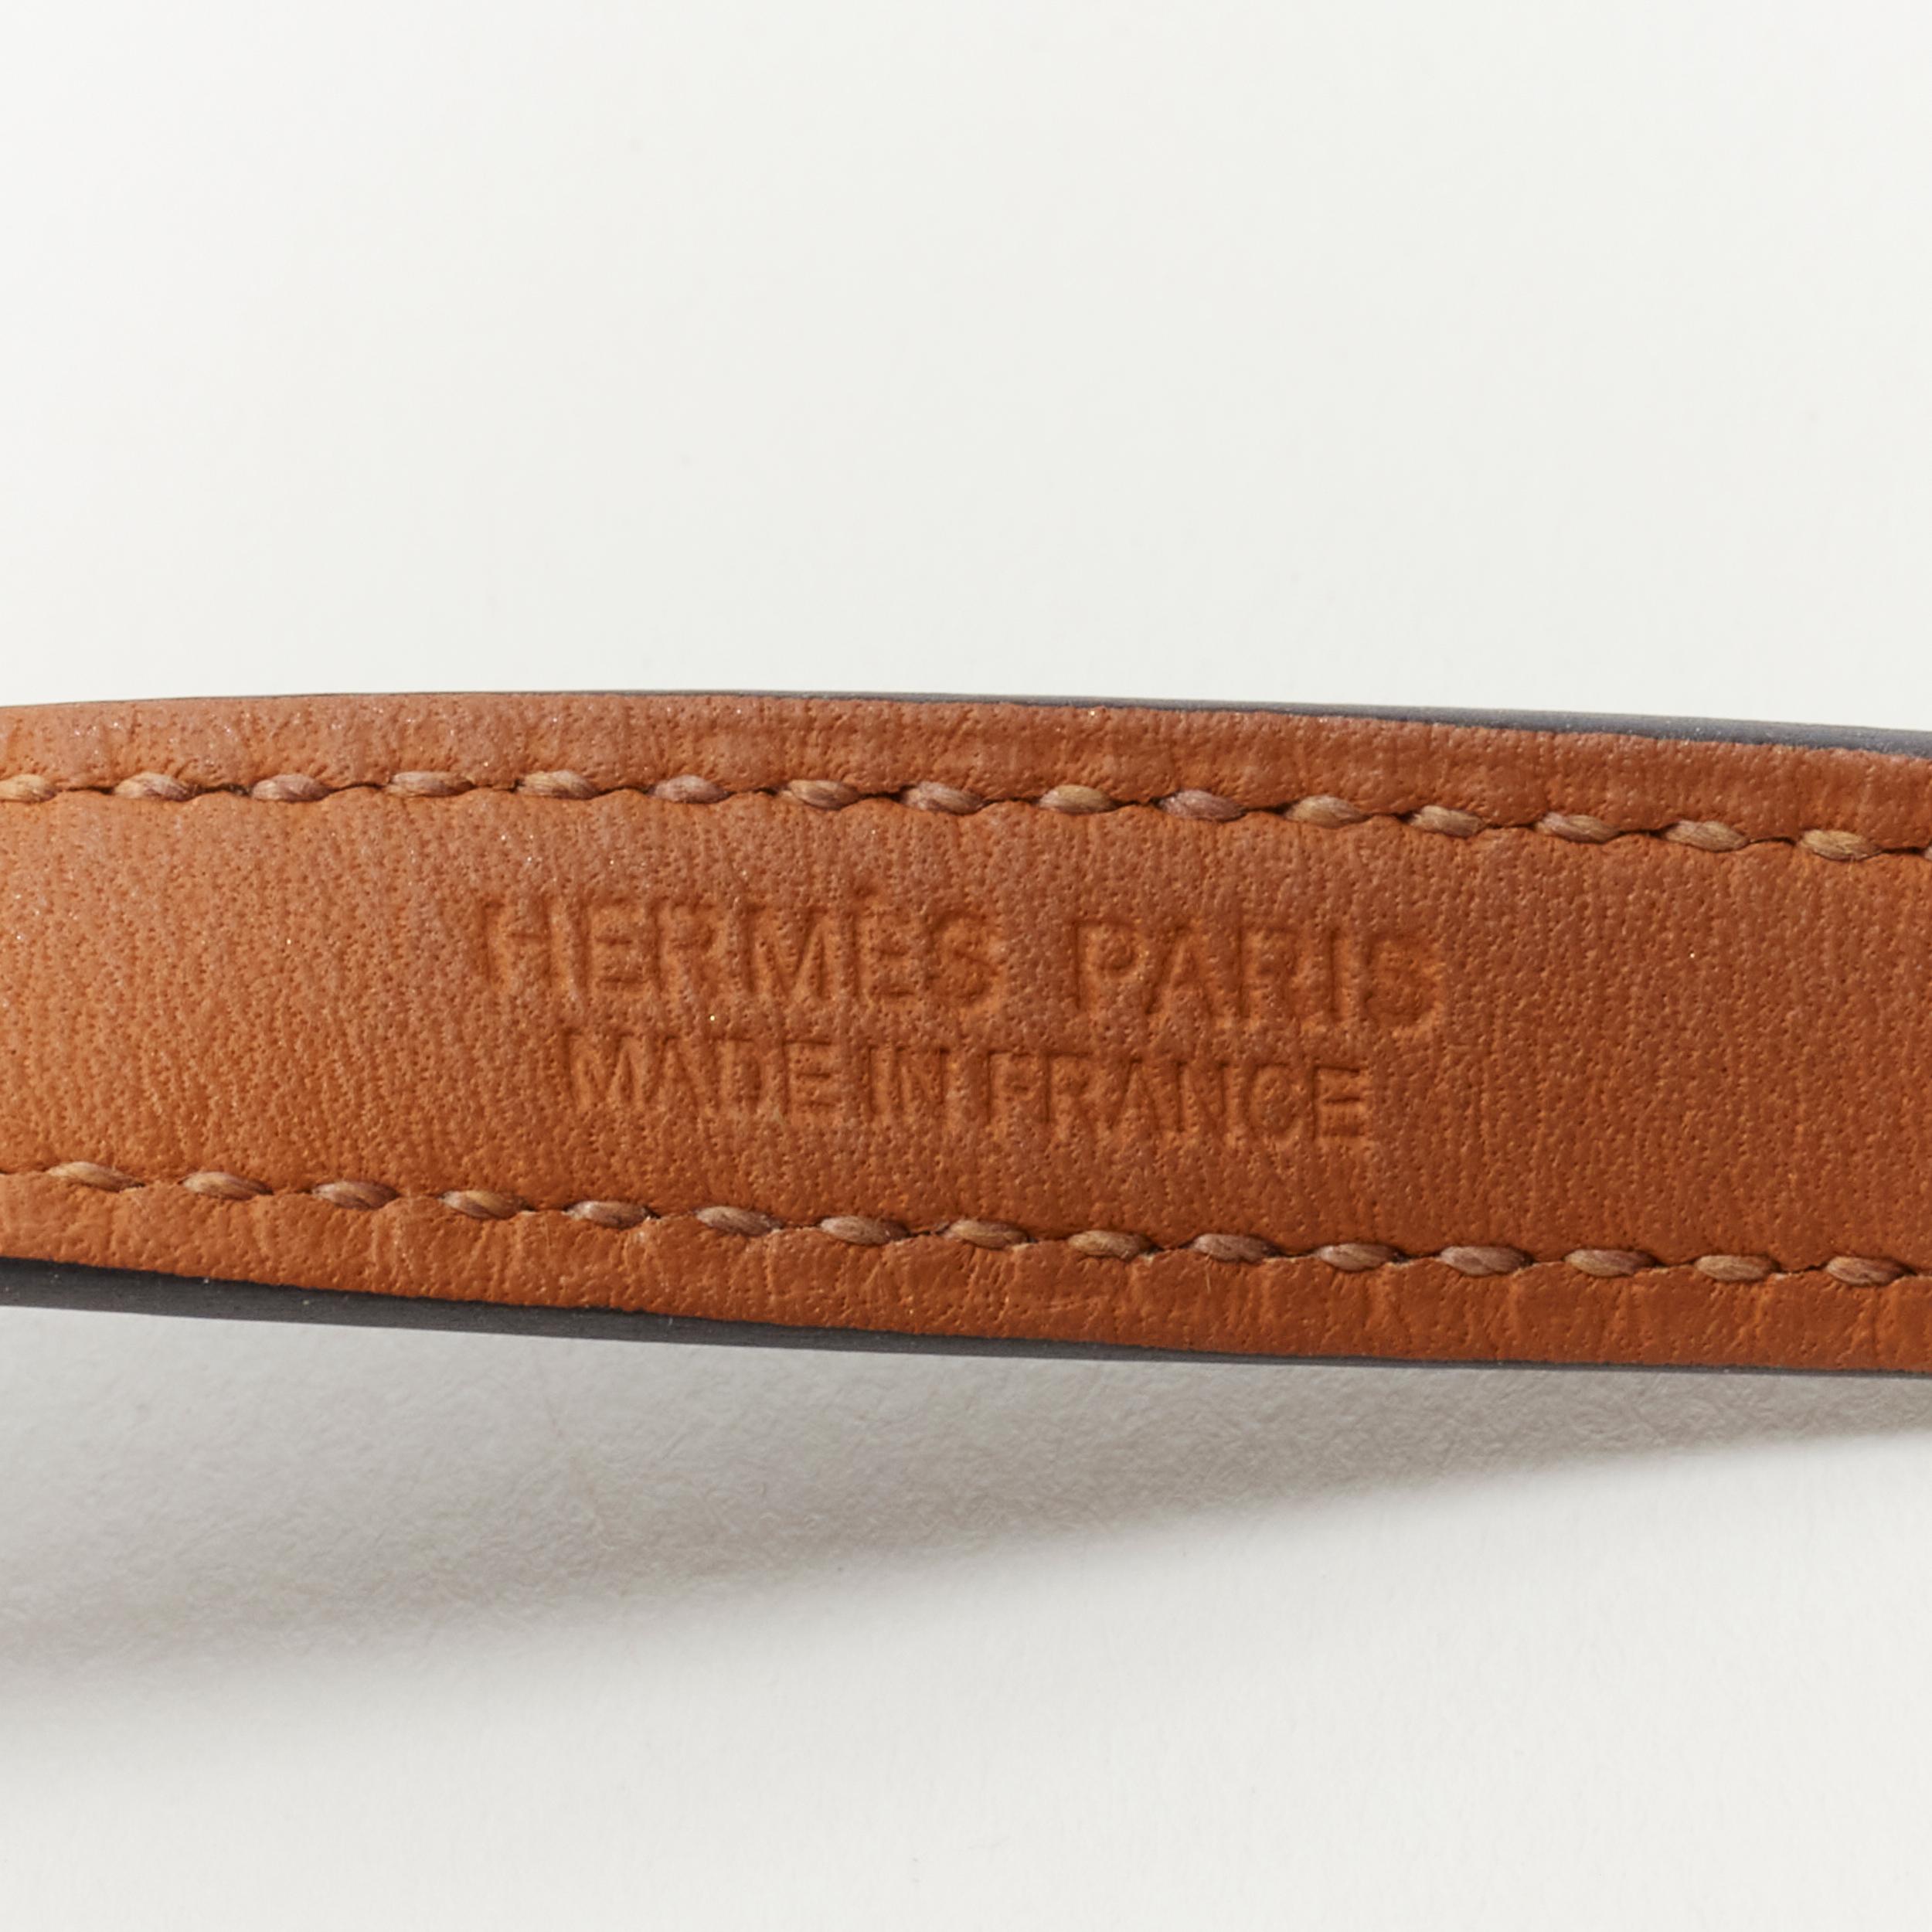 HERMES Rivale Double Tour GHW gold Collier stud black leather wrap bracelet 3